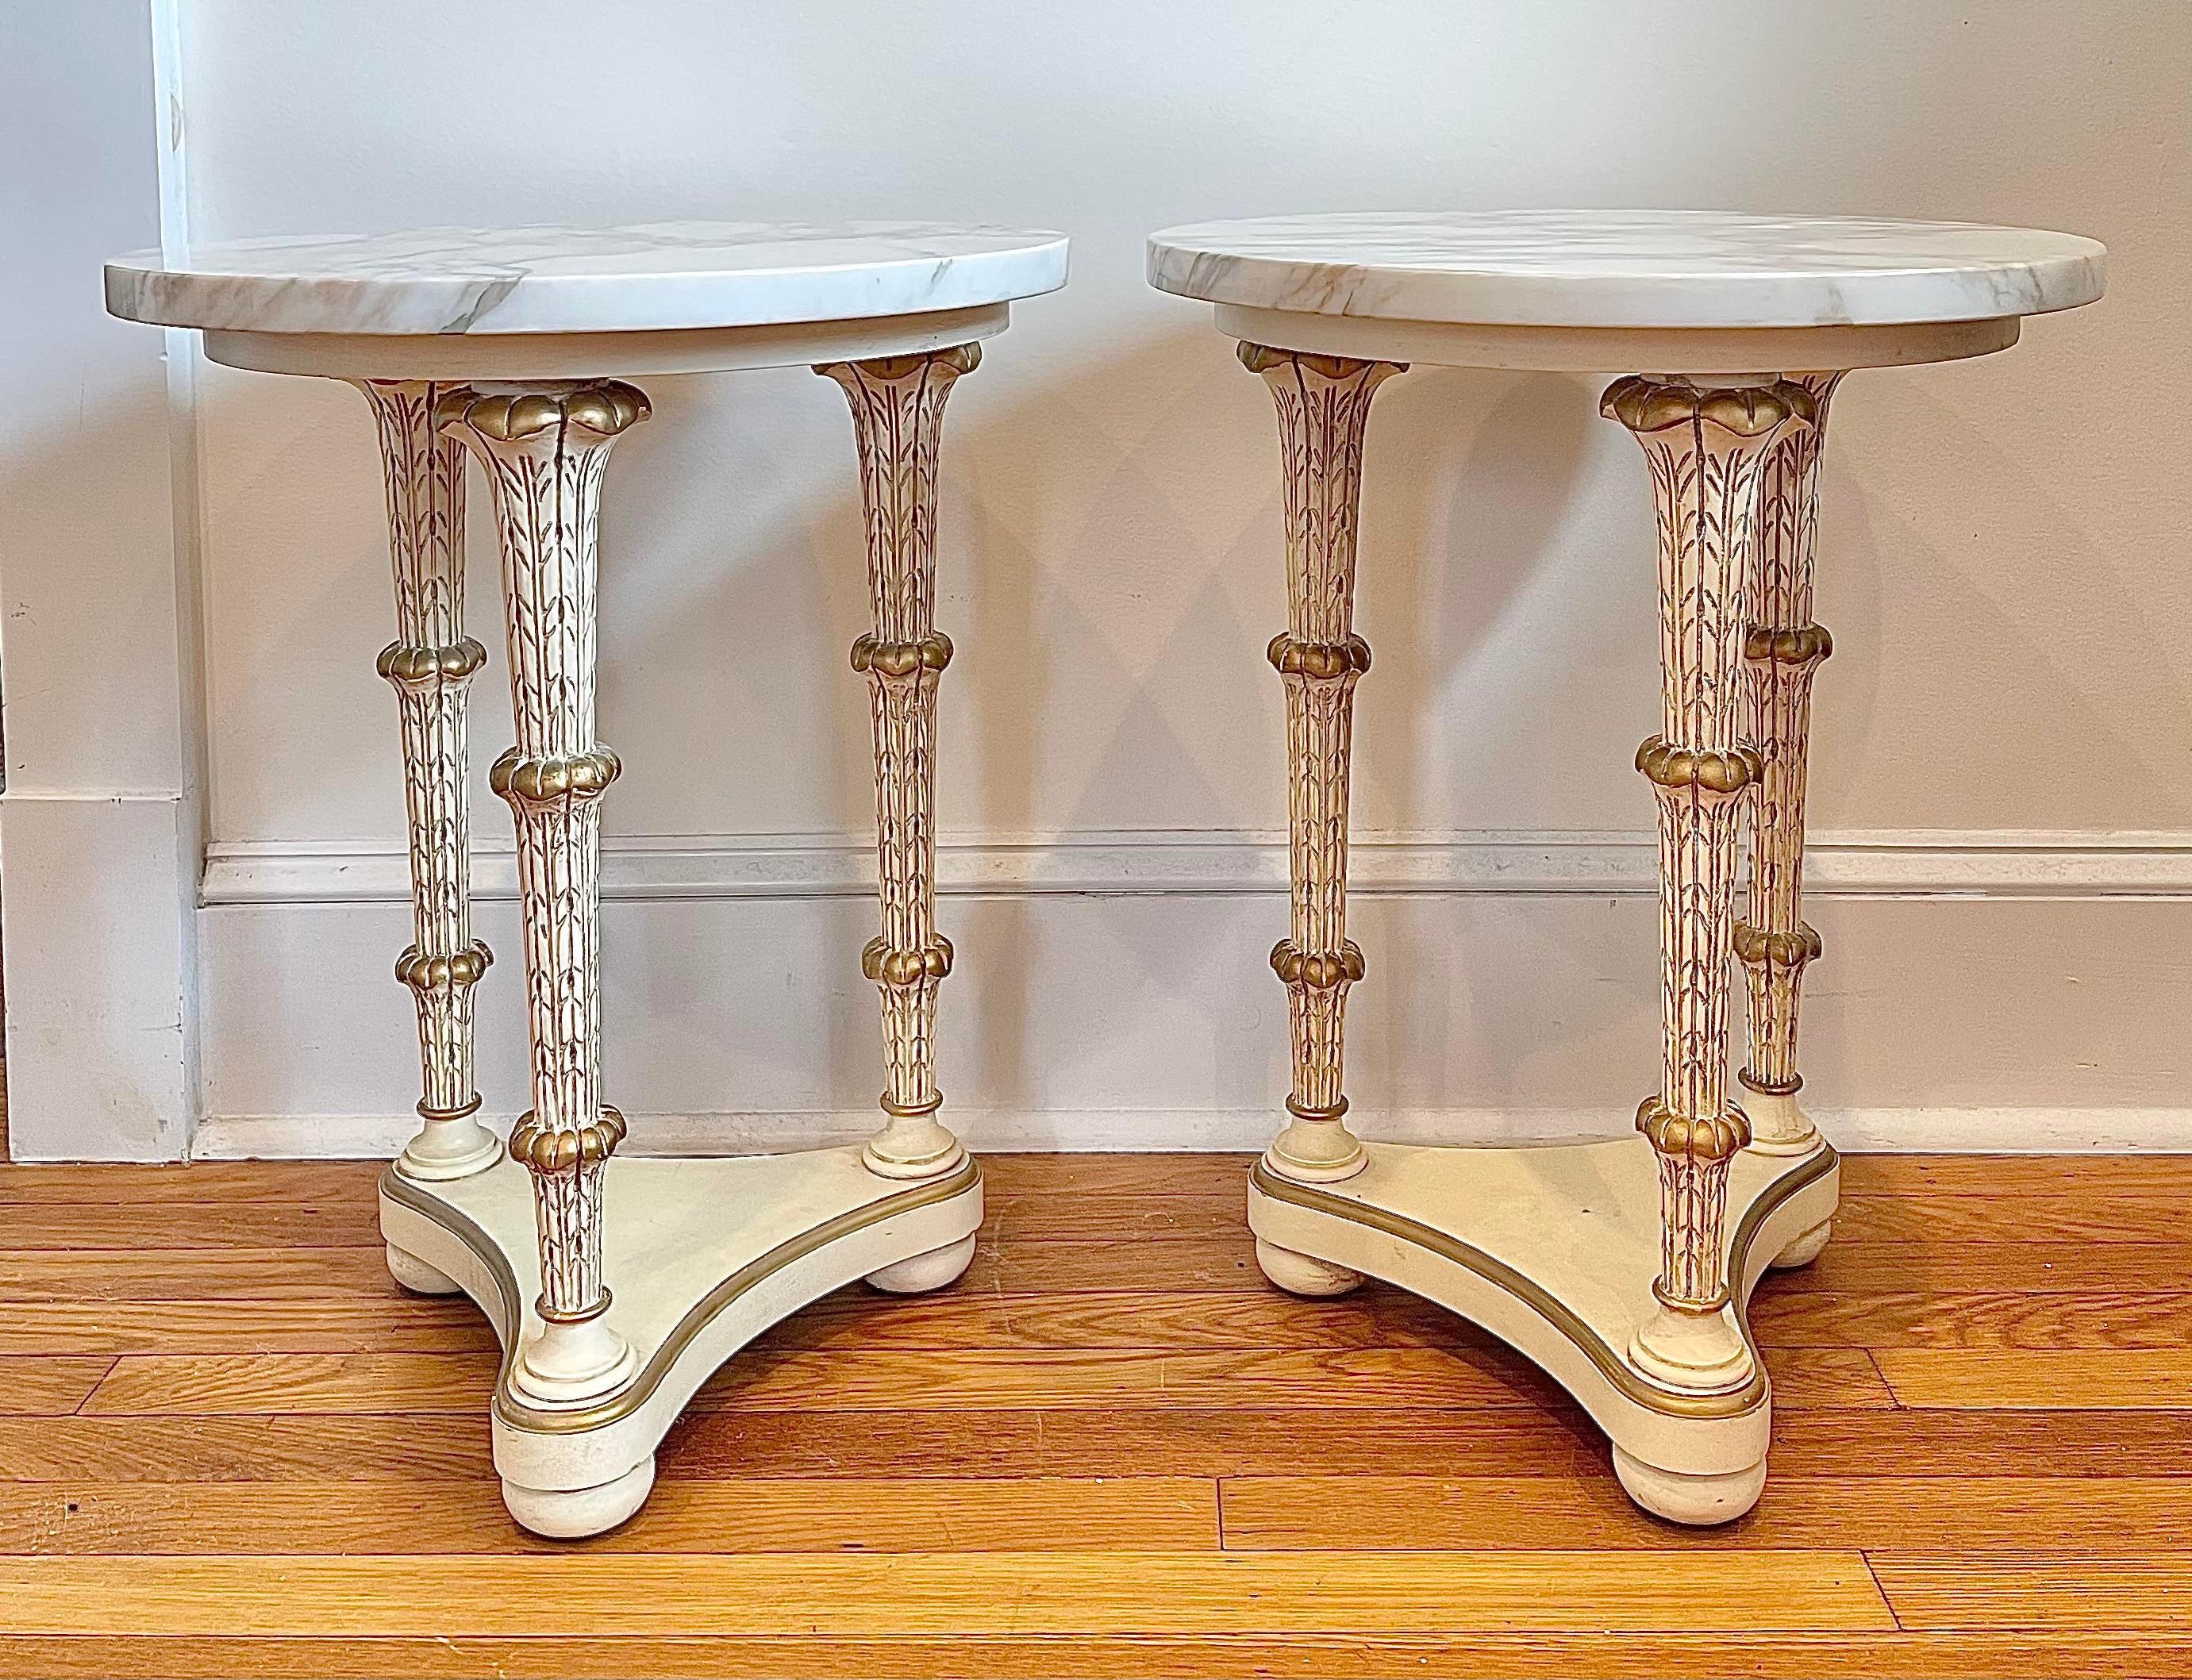 Schönes Paar neoklassischer Gueridon-Tische. 3 Akanthusblattbeine und wunderschön geäderte Marmorplatten.
Lieferung am Straßenrand in NYC/Philly verfügbar $300